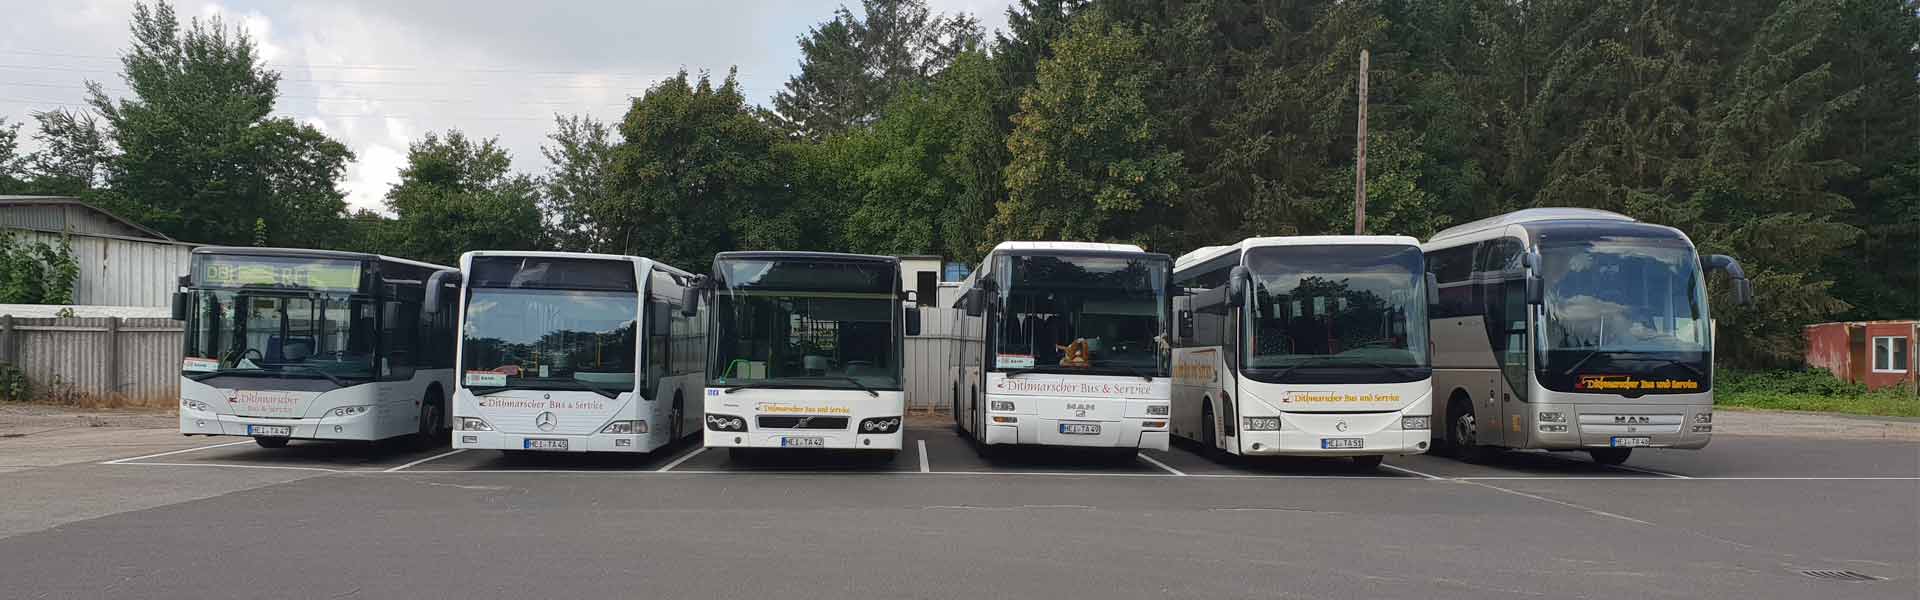 Dithmarscher Bus und Service Busflotte